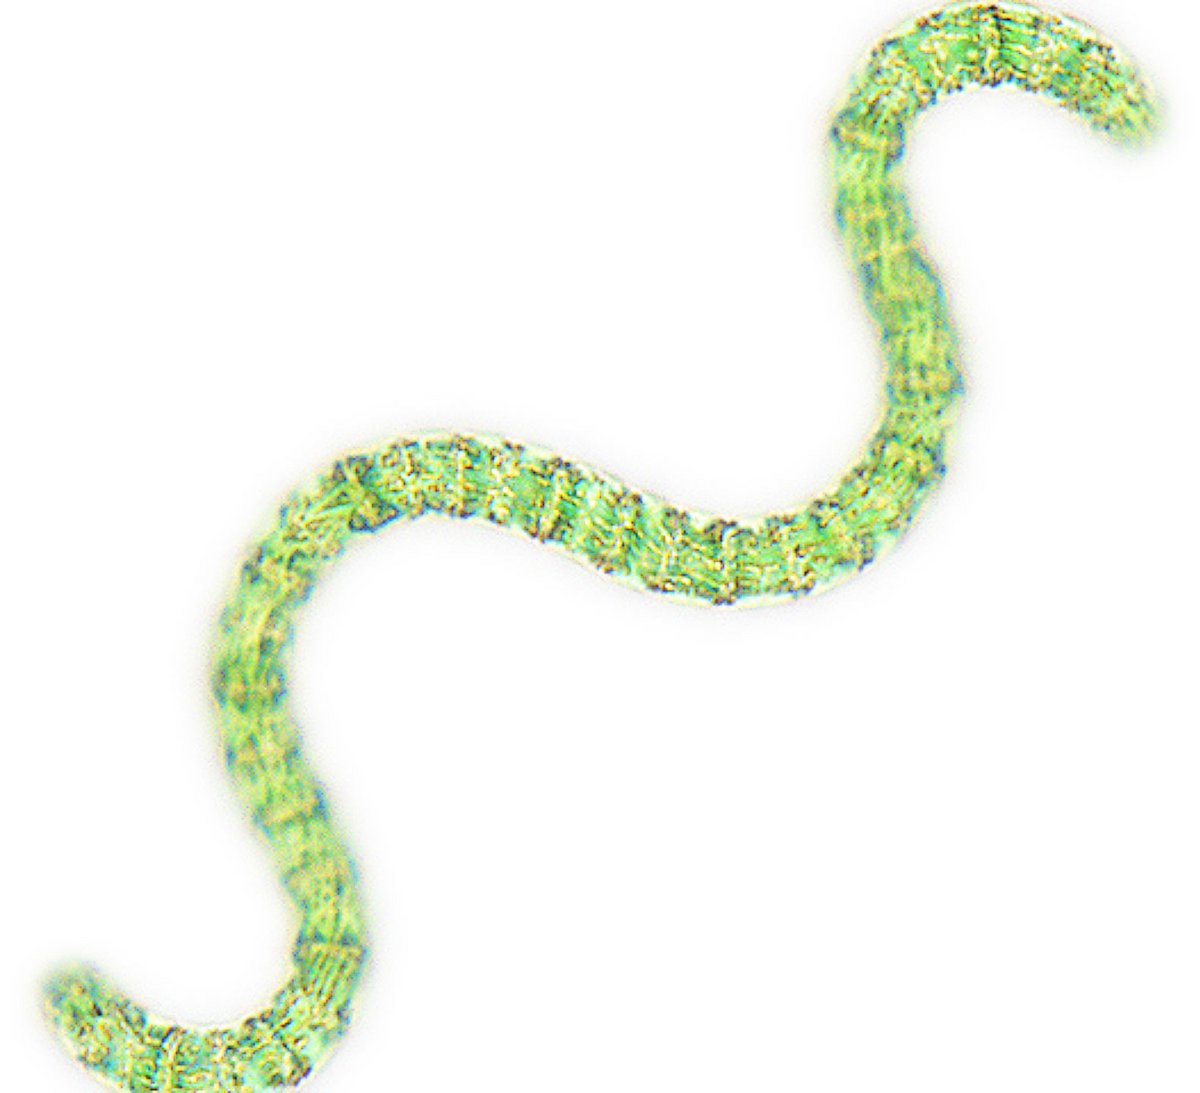 Grüne spiralförmige Mikroalge